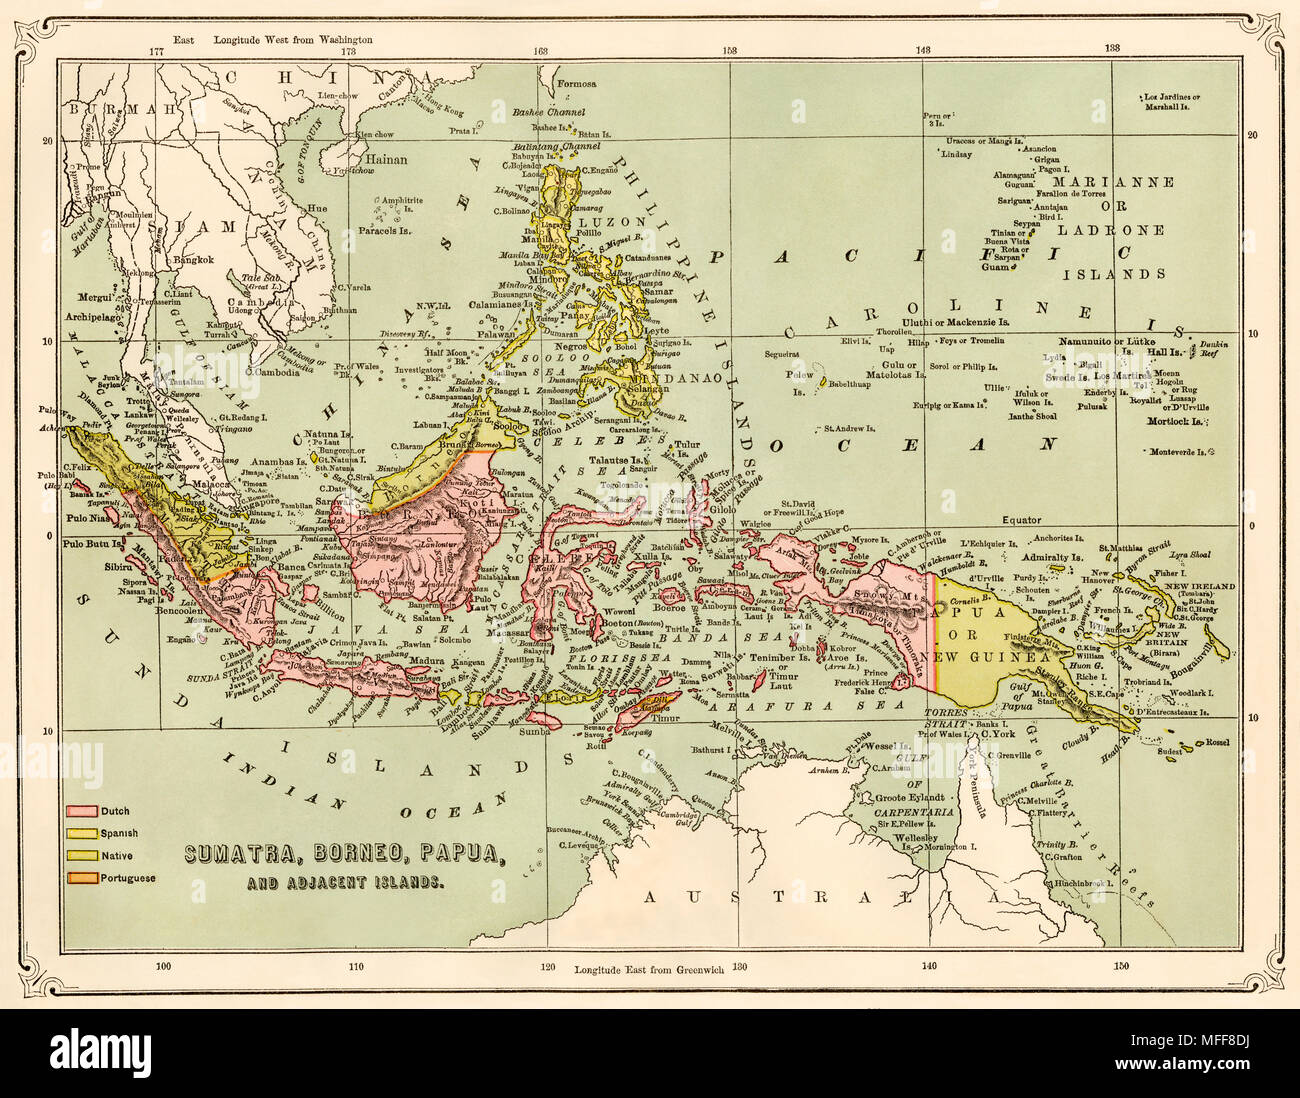 Karte von Sumatra, Borneo, Neuguinea, und die angrenzenden Inseln, 1870. Gedruckte farbige Lithographie Stockfoto